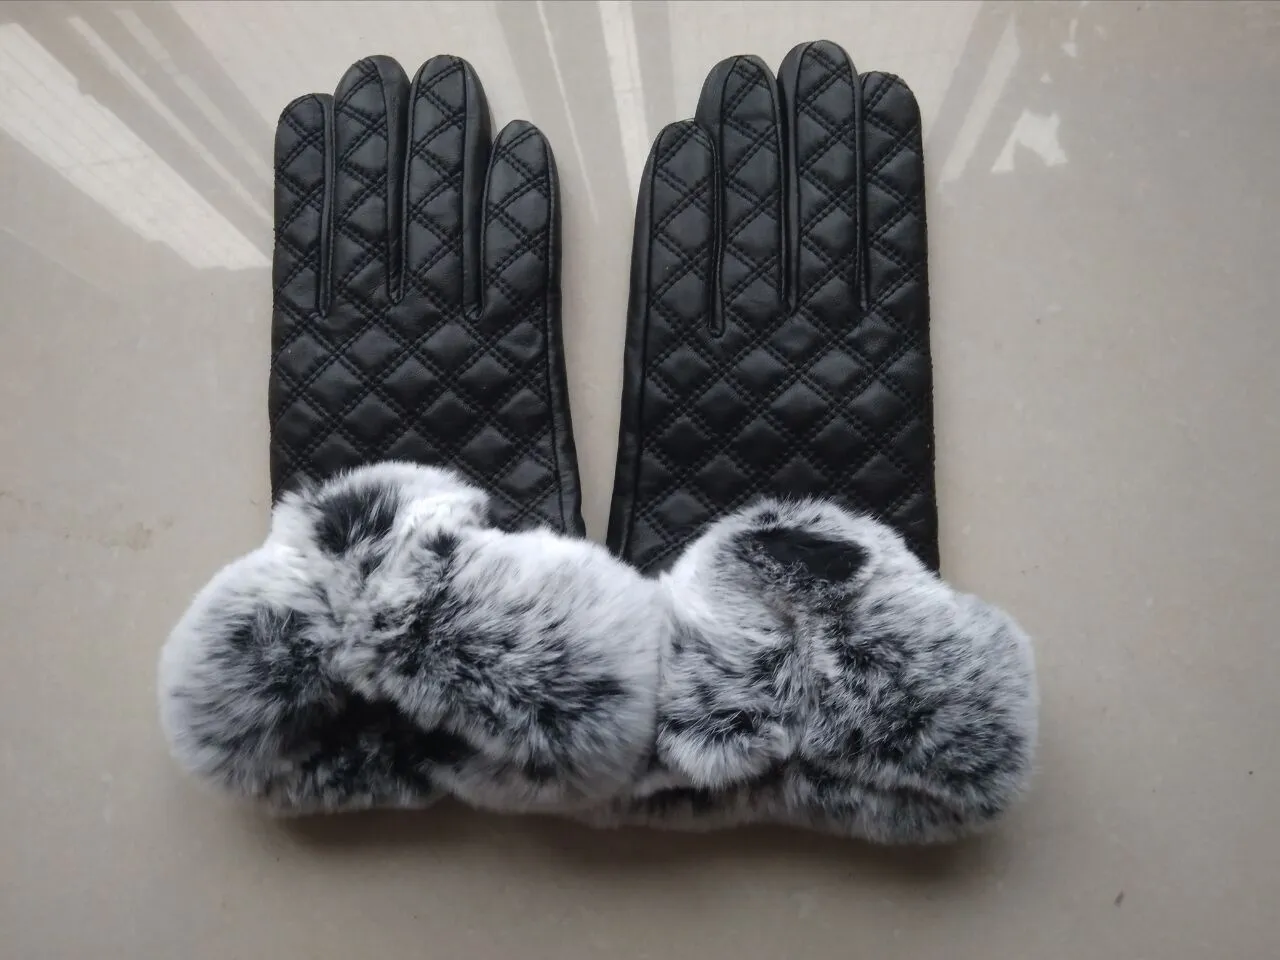 Hohe qualität 2018 neue herbst winter touchscreen handschuhe natürliche schafe haut verdickung weich und 100% echte lederhandschuhe